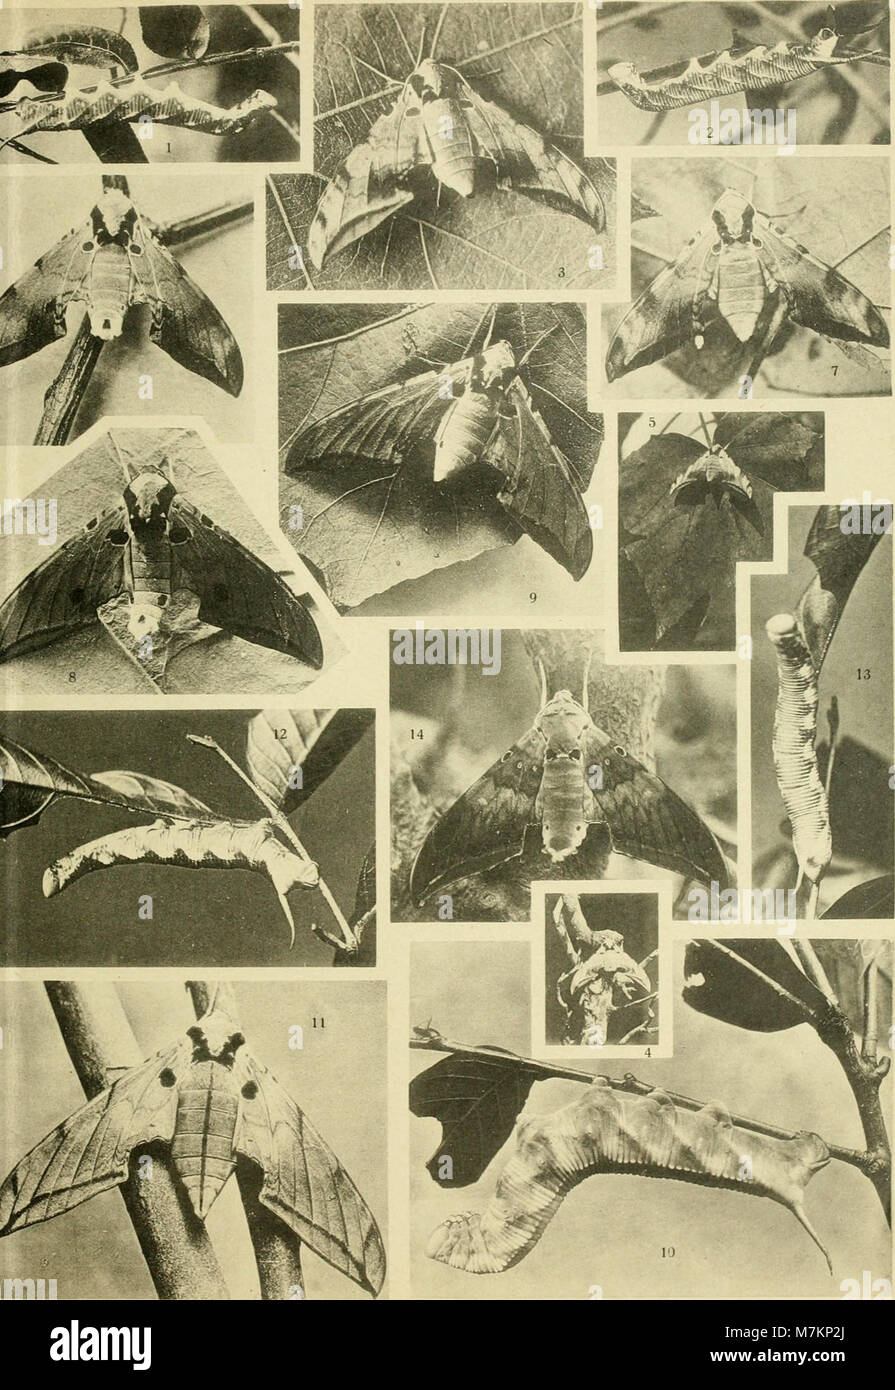 Biologie und Systematik der südschinesischen sphingiden, zugleich ein versuch einer biologie tropischer lepidopteren jamais (1922) (20372344332) Banque D'Images